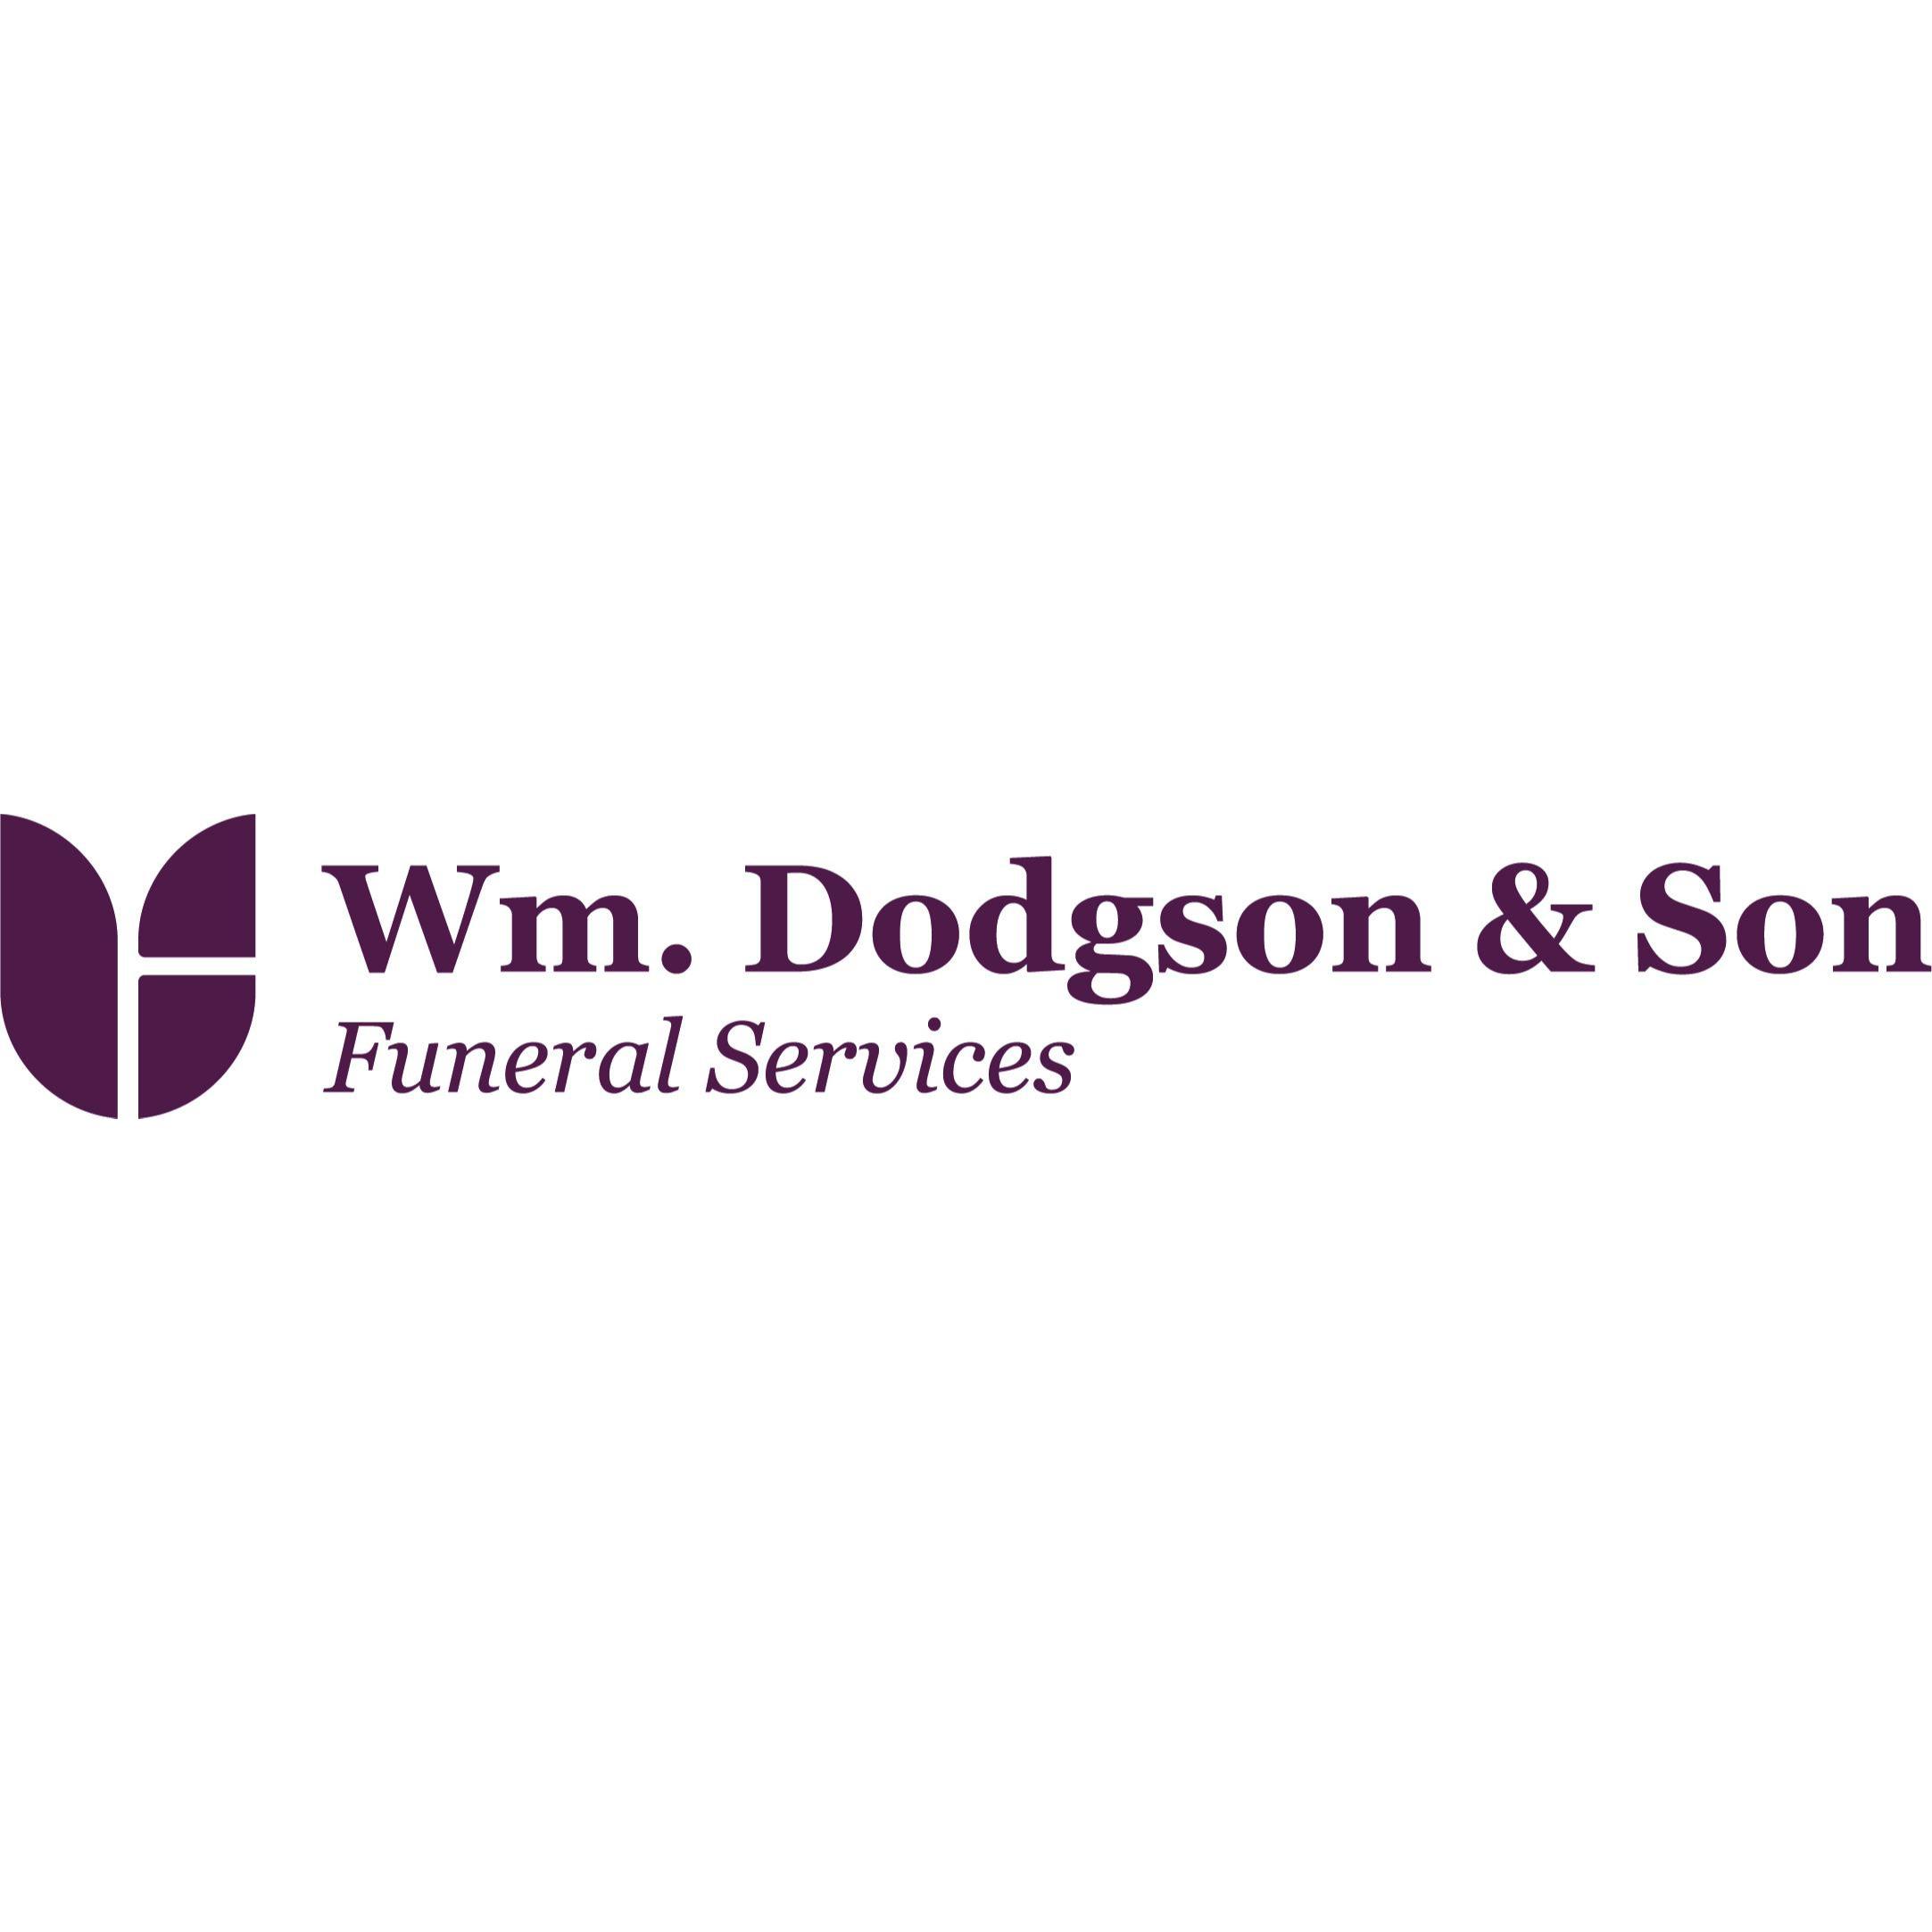 Wm. Dodgson & Son Funeral Services - Leeds, West Yorkshire LS26 8JA - 01138 874755 | ShowMeLocal.com